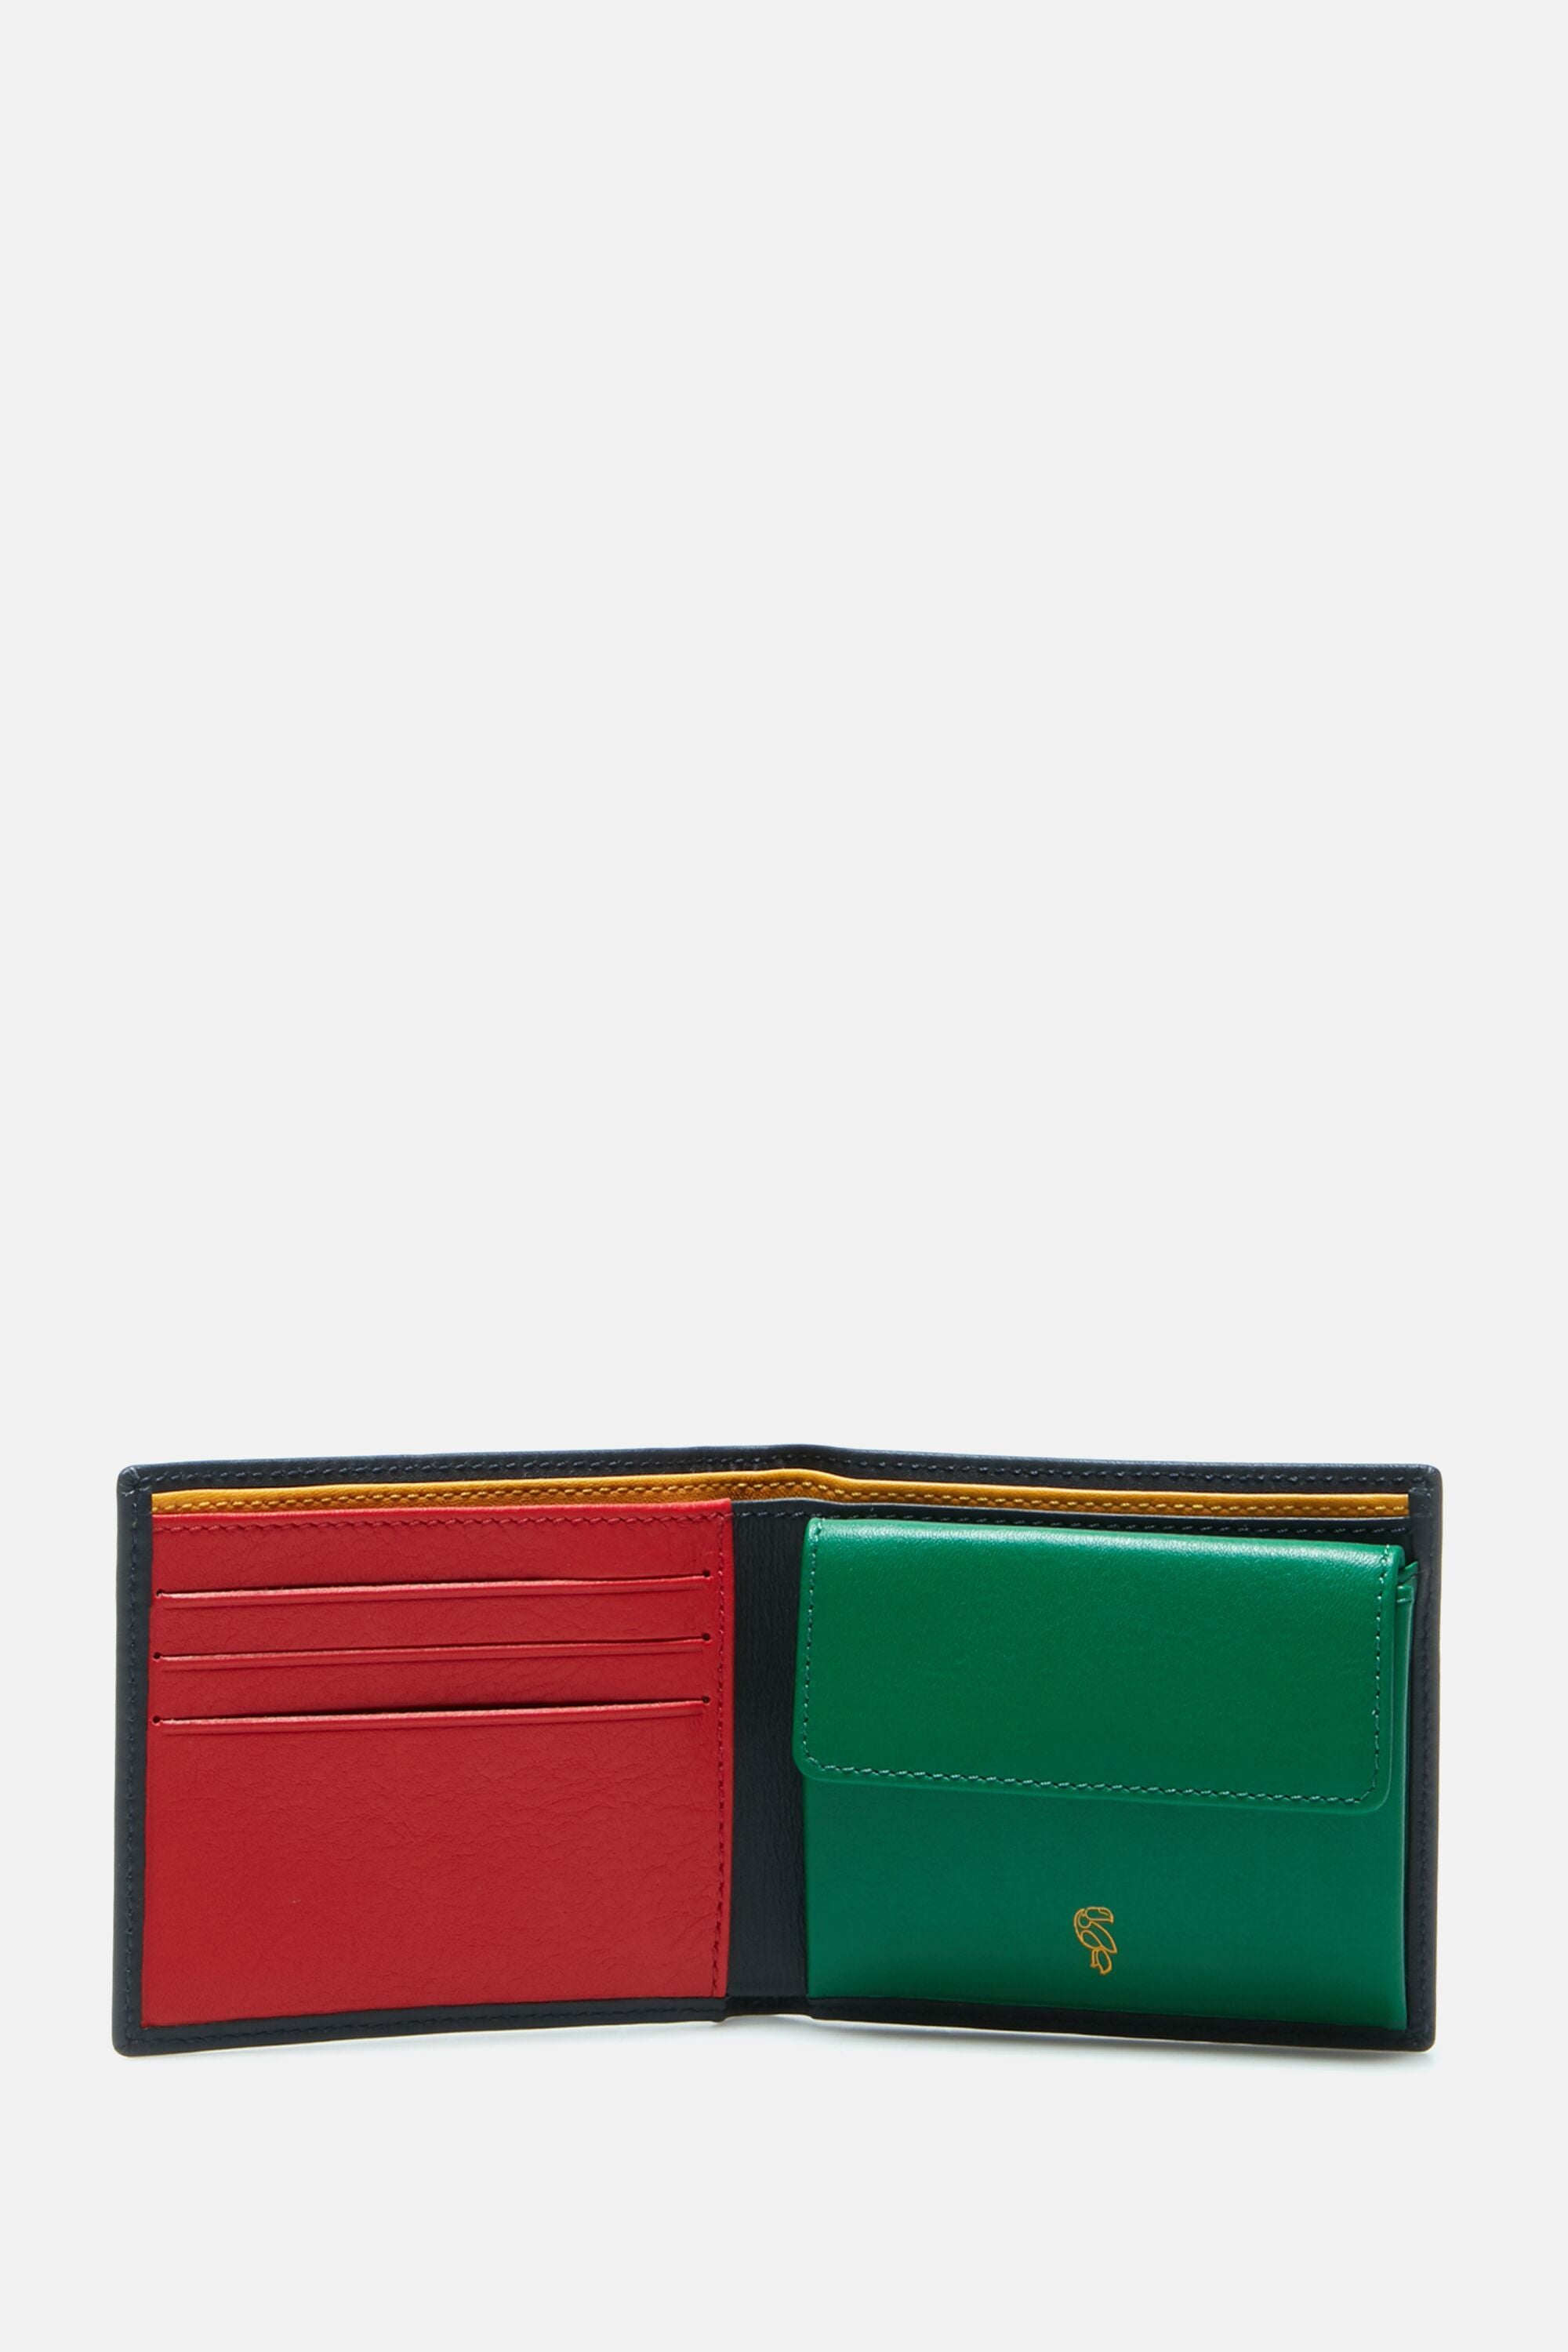 Buy Teakwood Women Green Solid Two Fold Leather Wallet Online